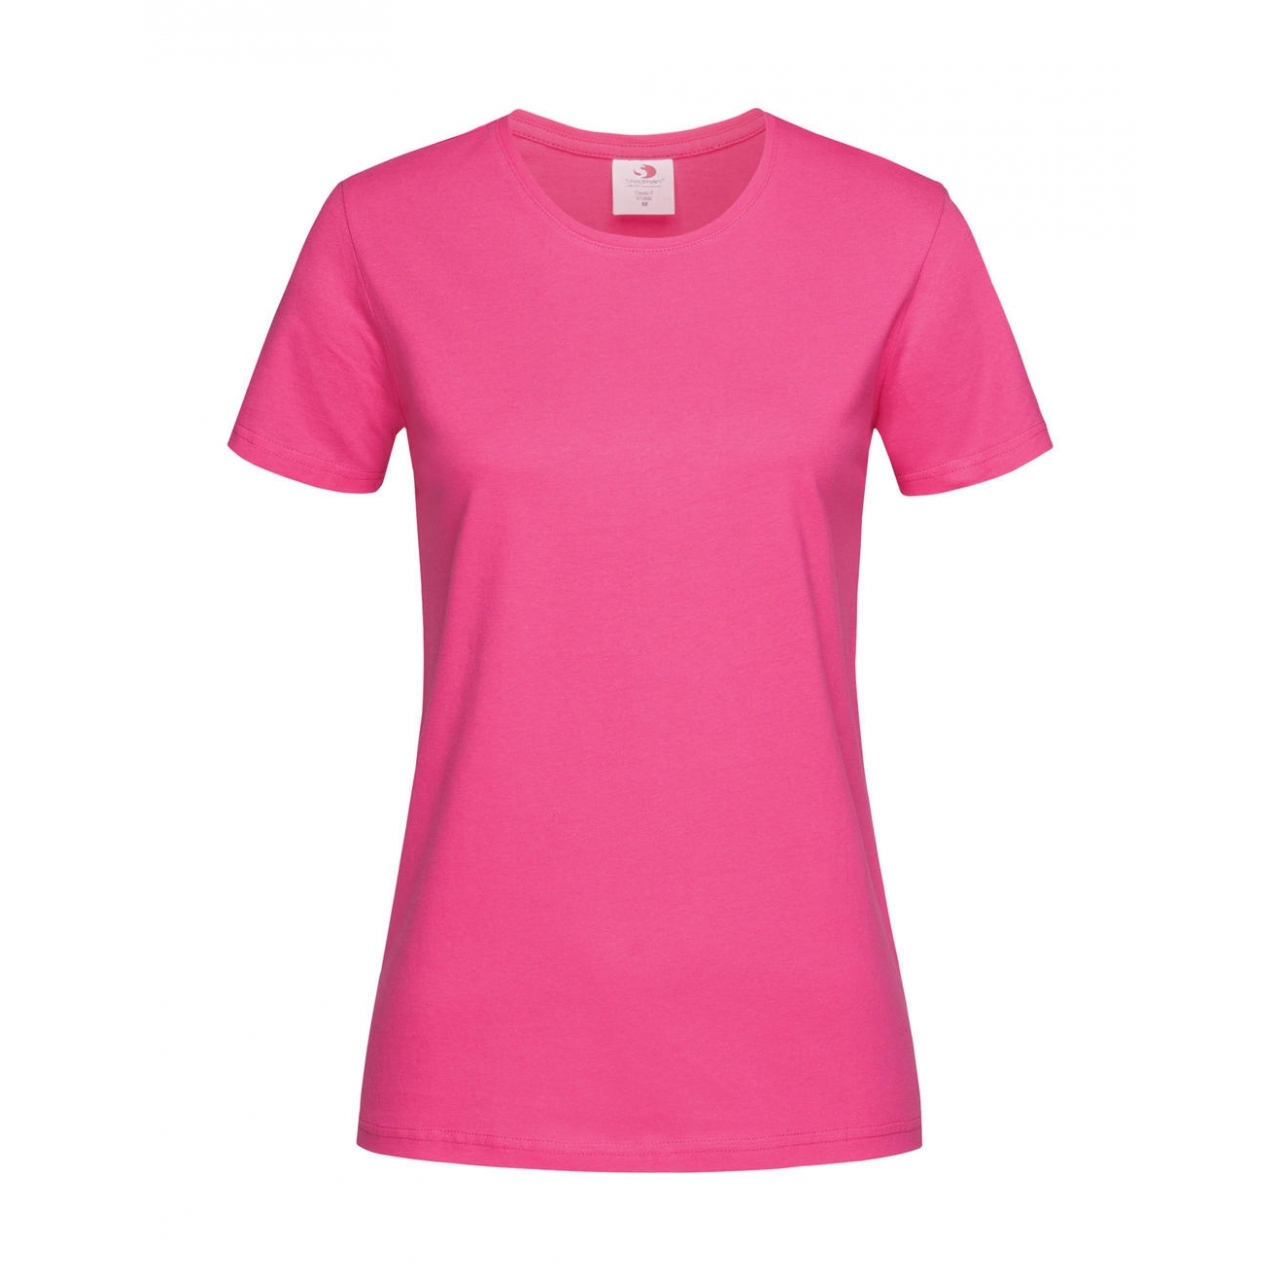 Tričko dámské Stedman Fitted s kulatým výstřihem - růžové, XXL